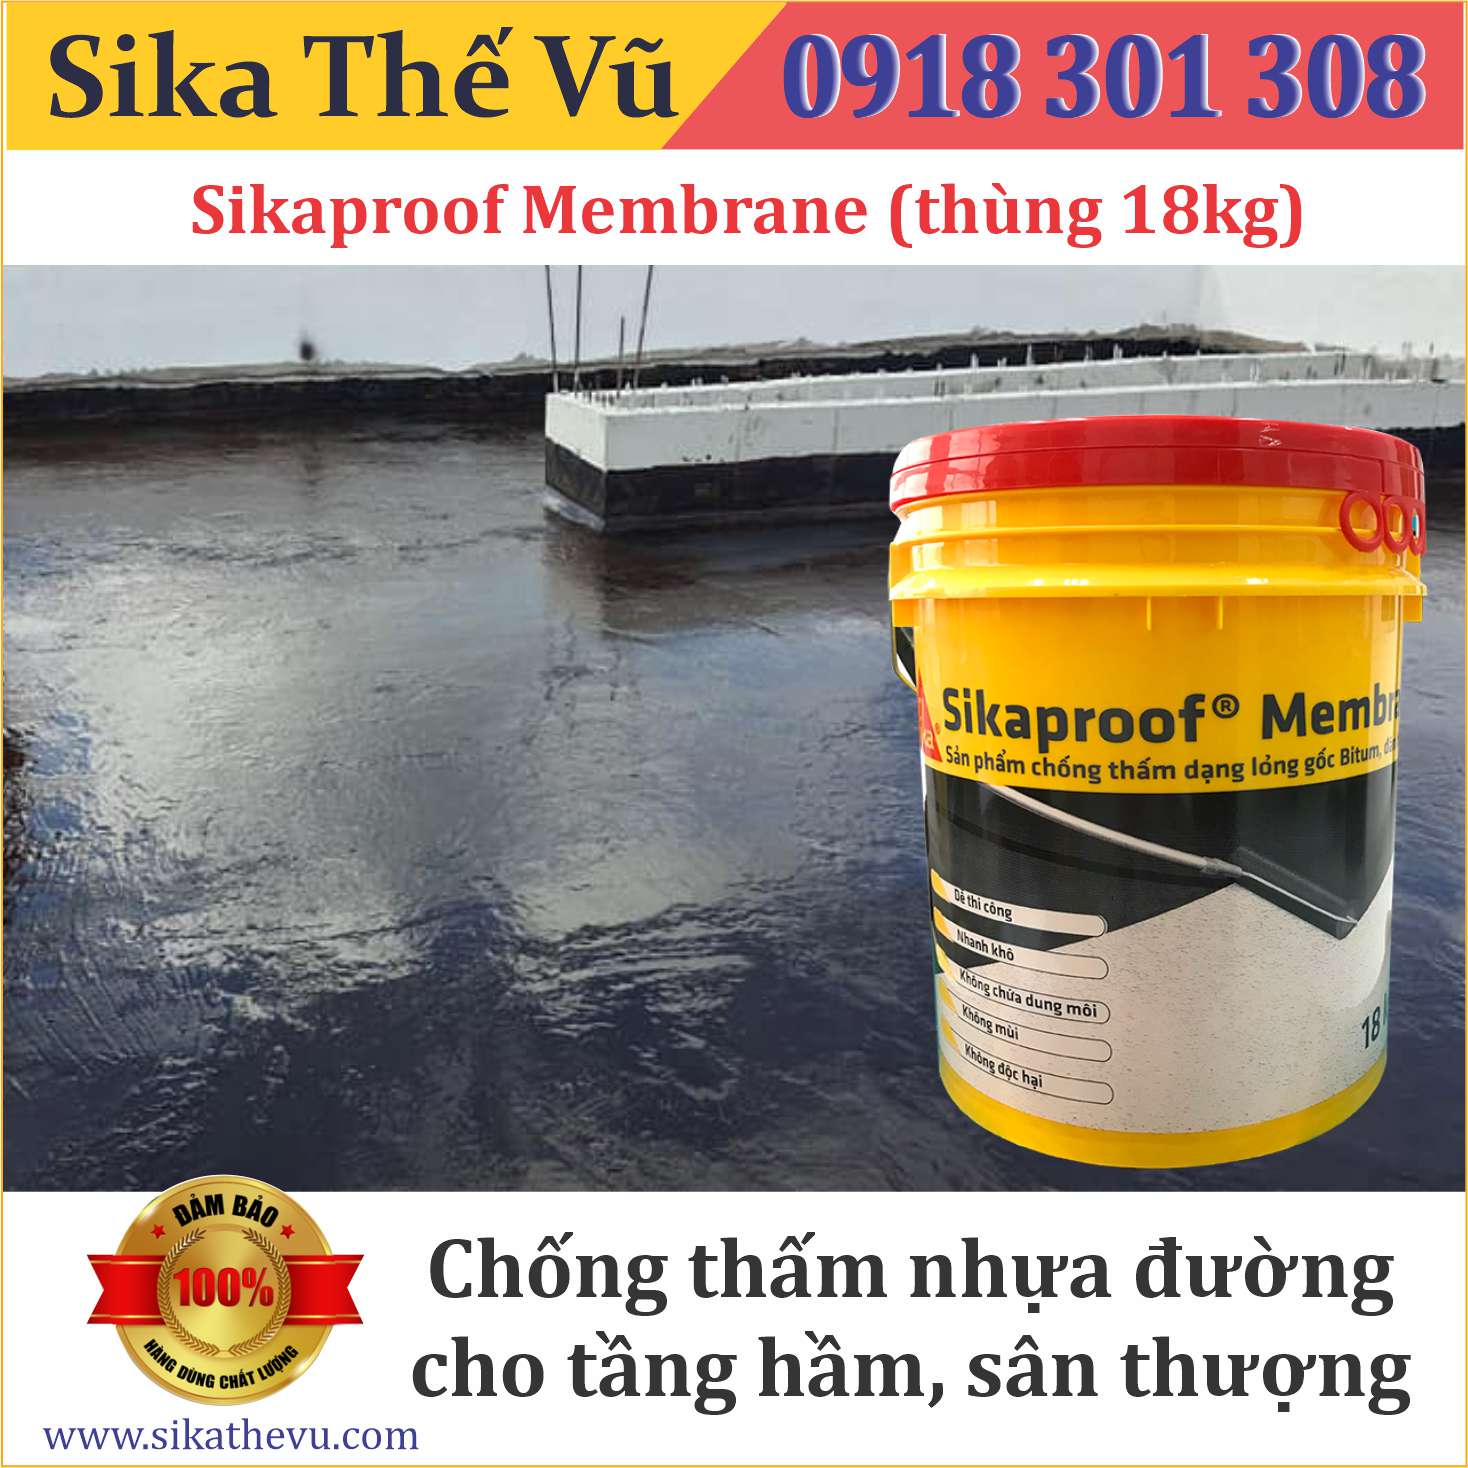 Sikaproof Membrane – sản phẩm chống thấm hàng đầu trong ngành xây dựng. Với khả năng chống thấm hoàn hảo, sự bảo vệ của Sikaproof Membrane không chỉ giúp cho công trình của bạn được hoàn thiện mà còn mang lại cho bạn sự yên tâm.